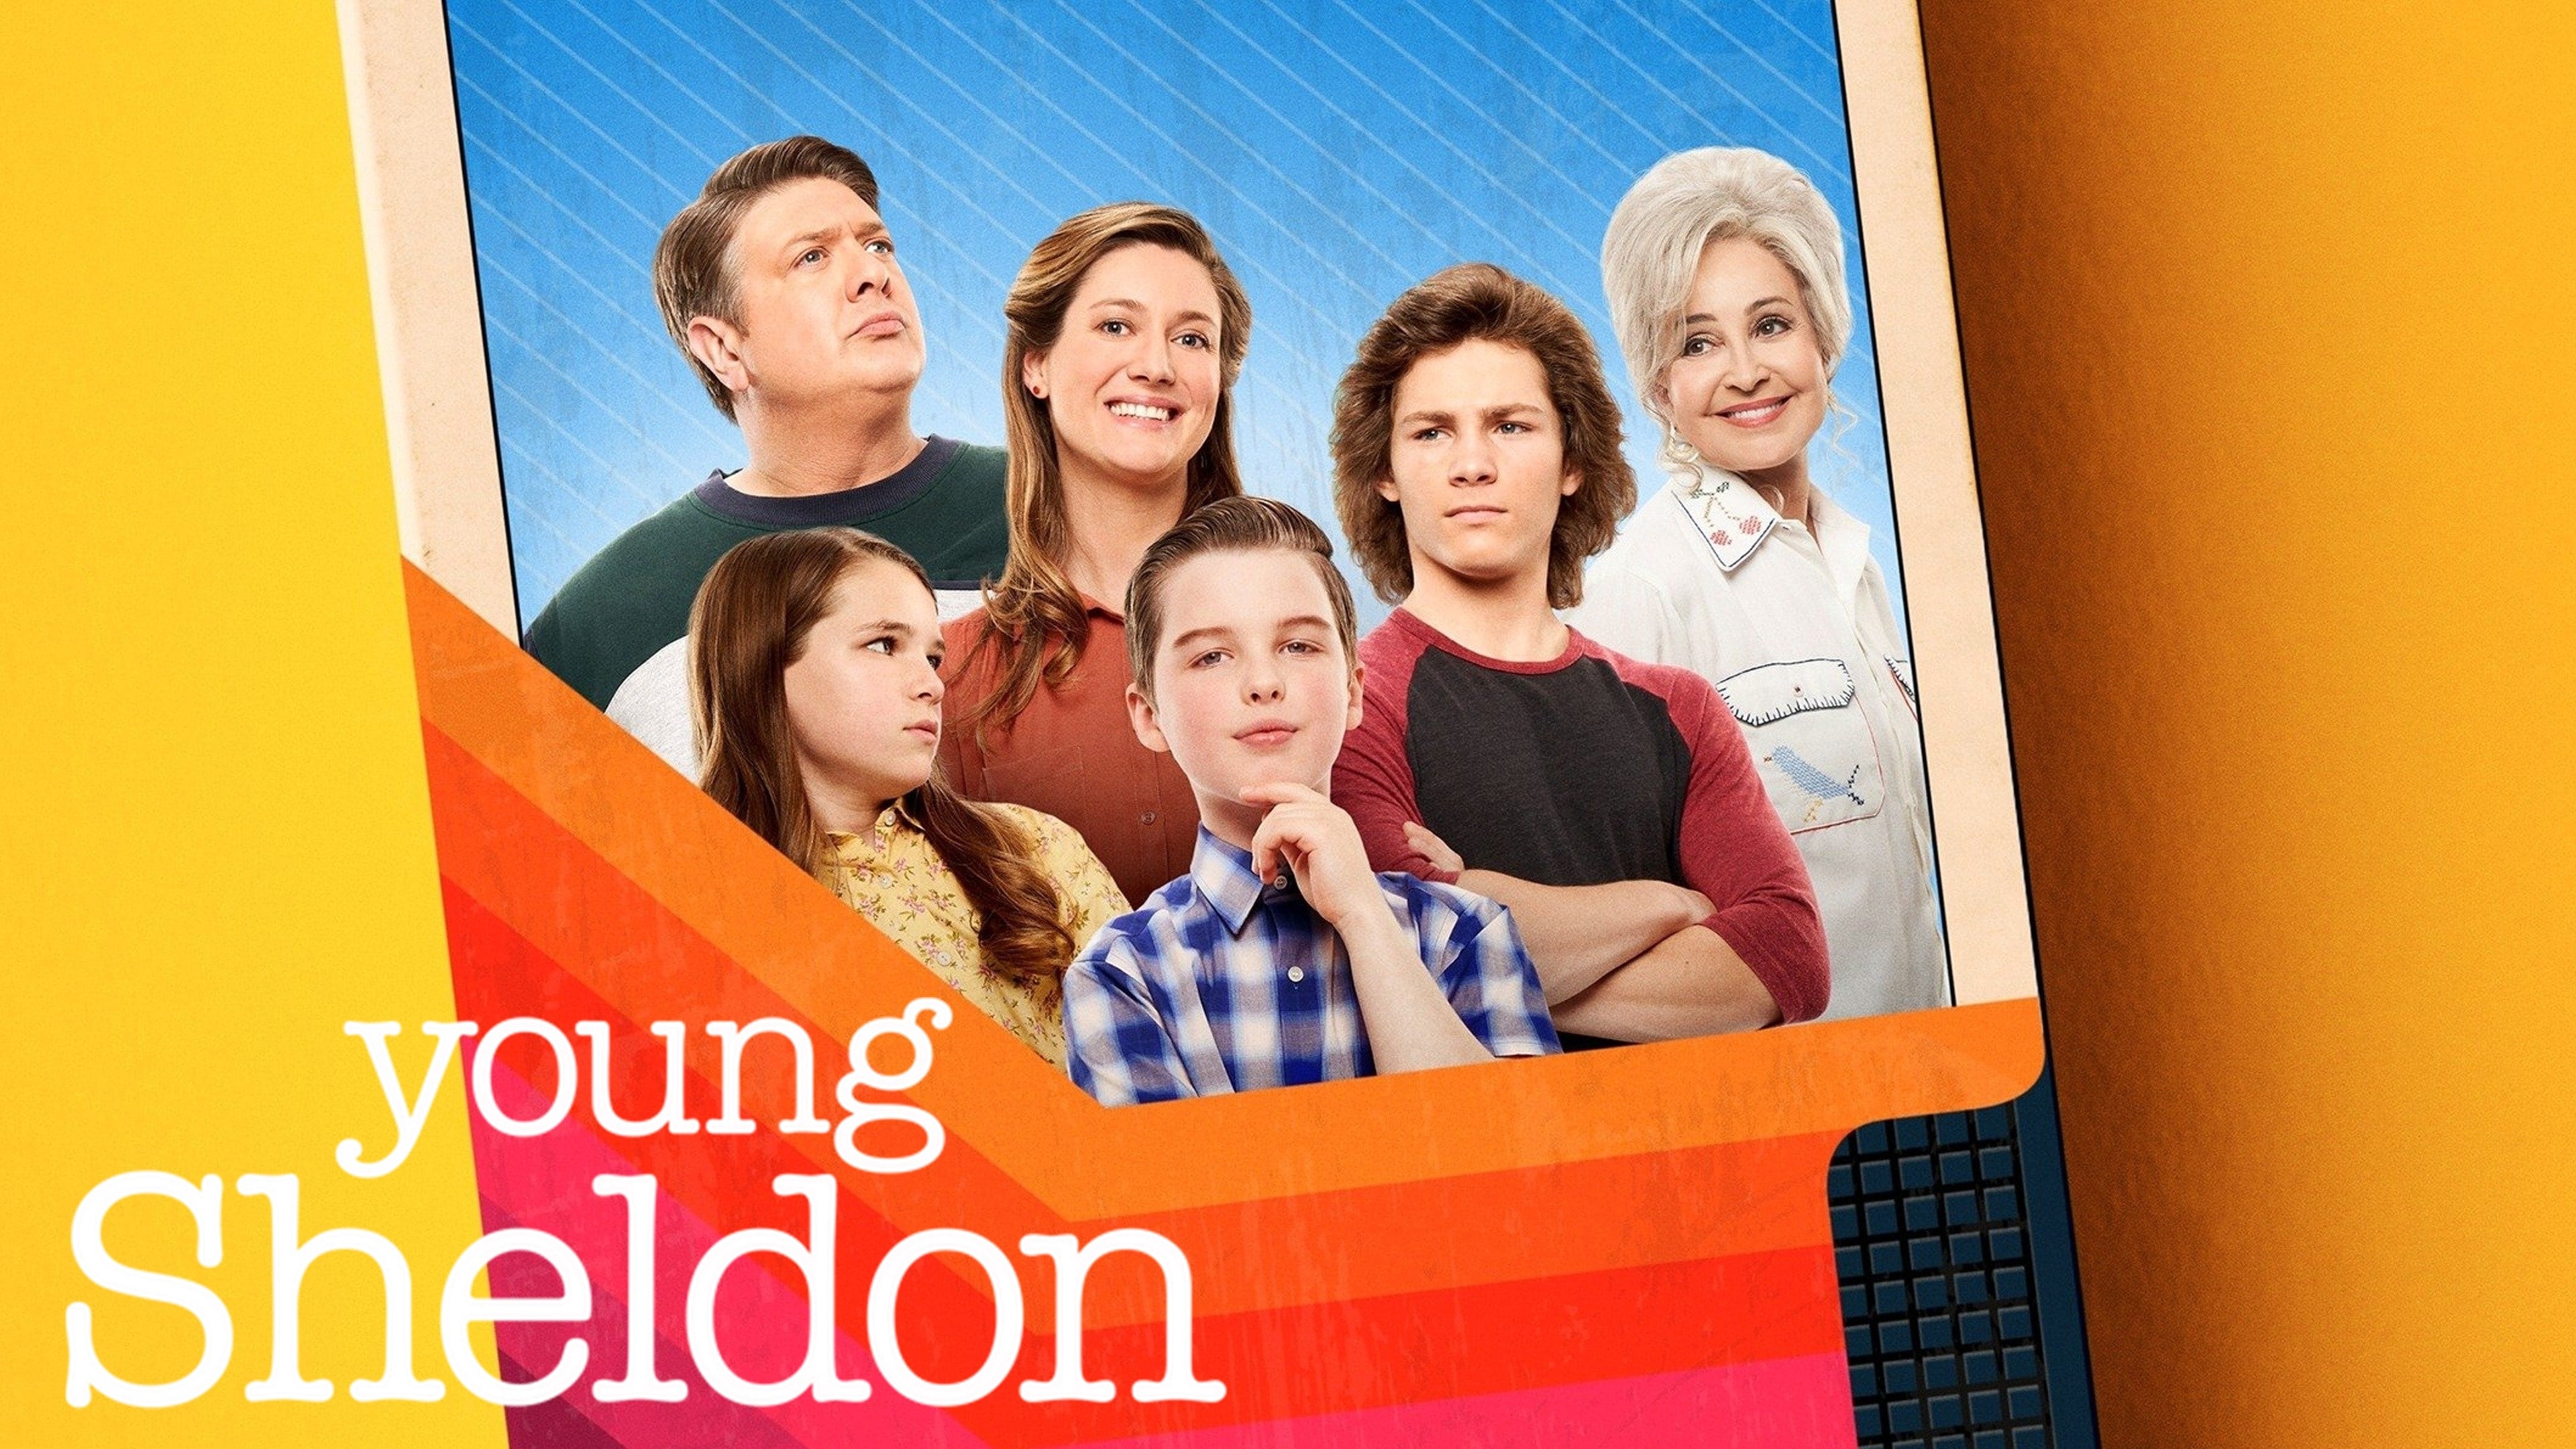 El joven Sheldon - Season 7 Episode 11